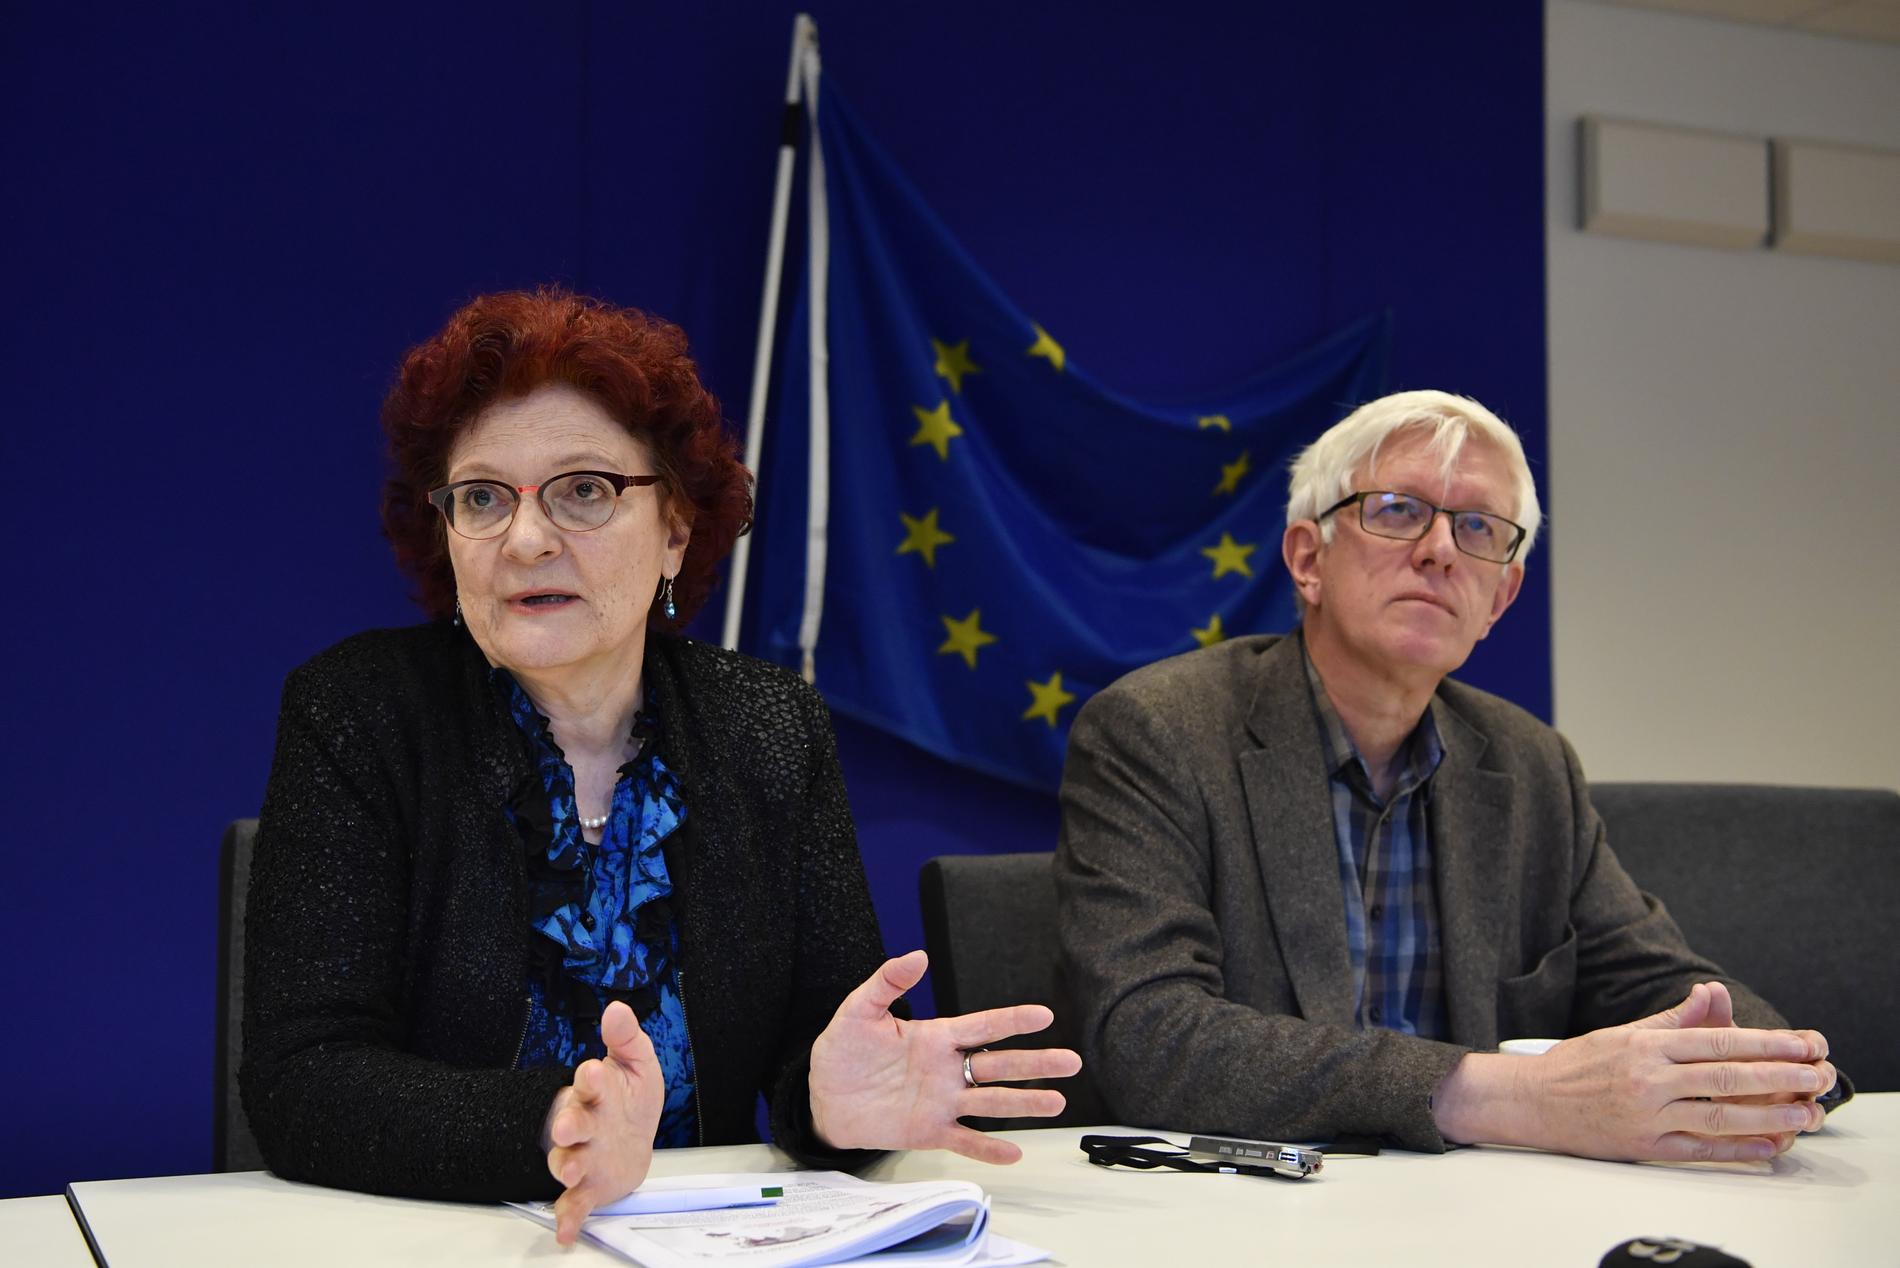 Andrea Ammon, generaldirektör för EU:s smittskyddsmyndighet, och Johan Carlsson, generaldirektör för Folkhälsomyndigheten, under onsdagens seminarium om hur coronavirusutbrottet påverkar Europa och Sverige.